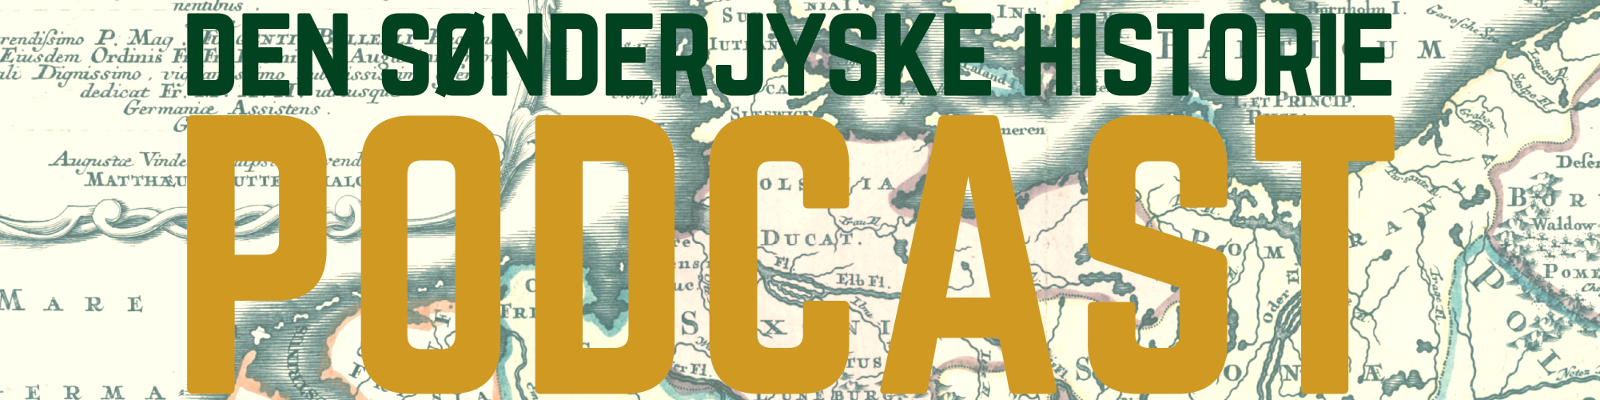 Den Sønderjysk Historie-Podcast